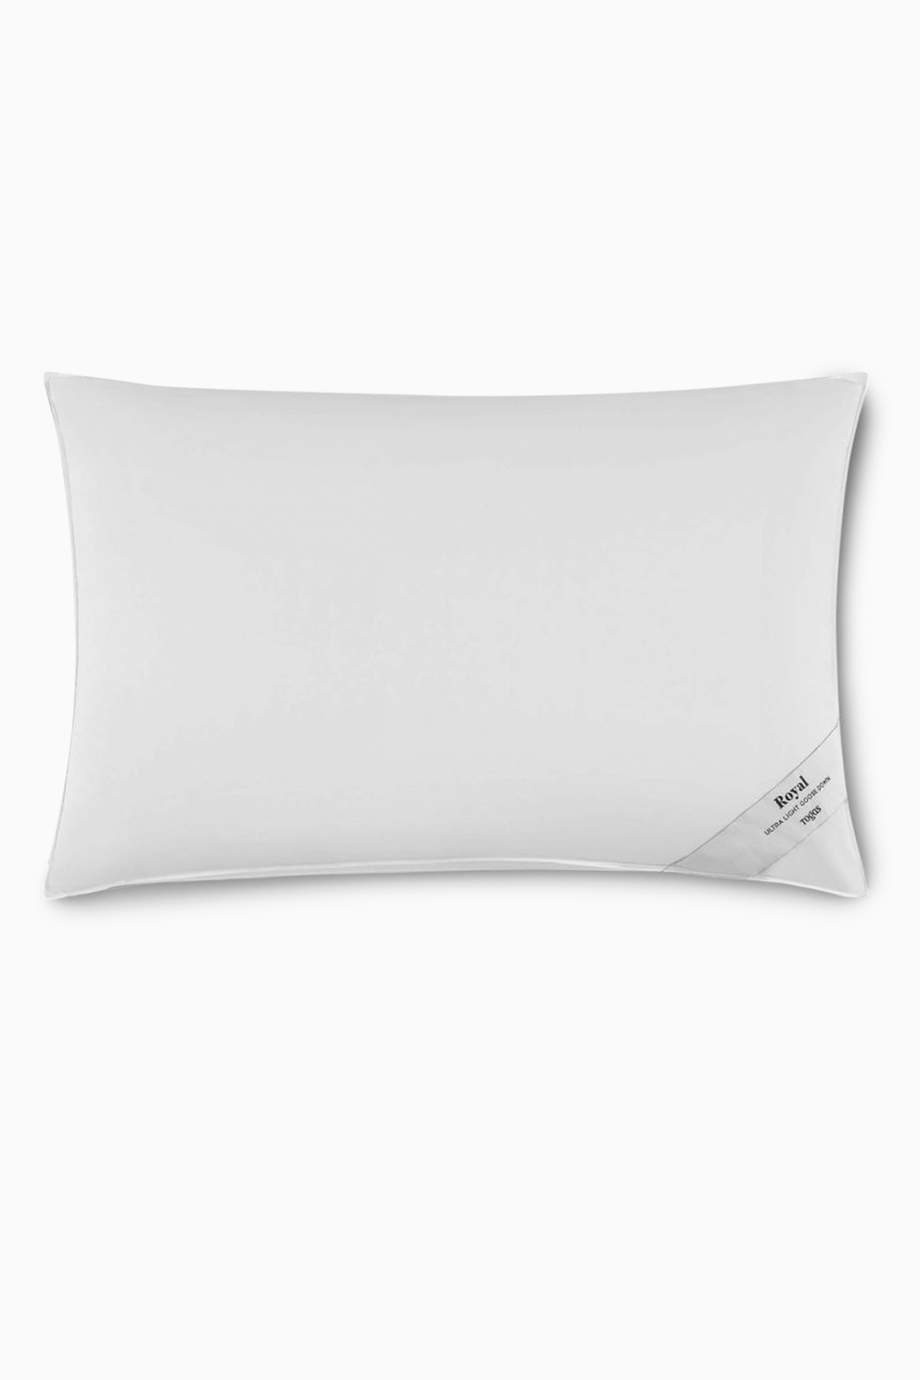 Togas White Royal Pillow Ultra, King Size Down Pillows Bed Bath Beyond